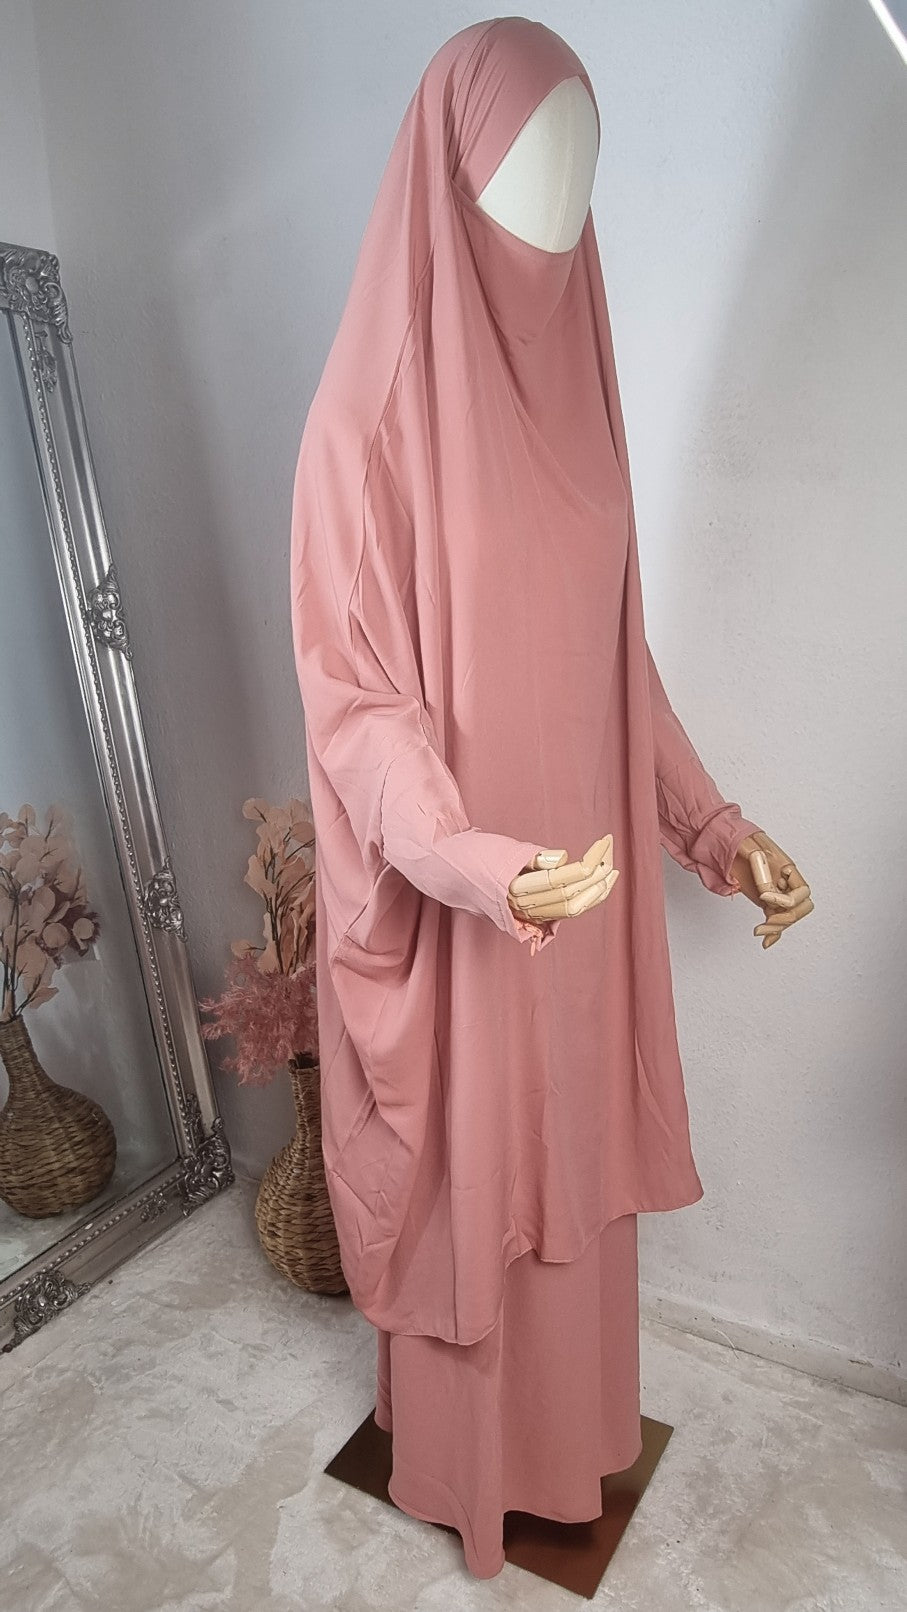 OnHerDeen 2 piece jilbab soft pink